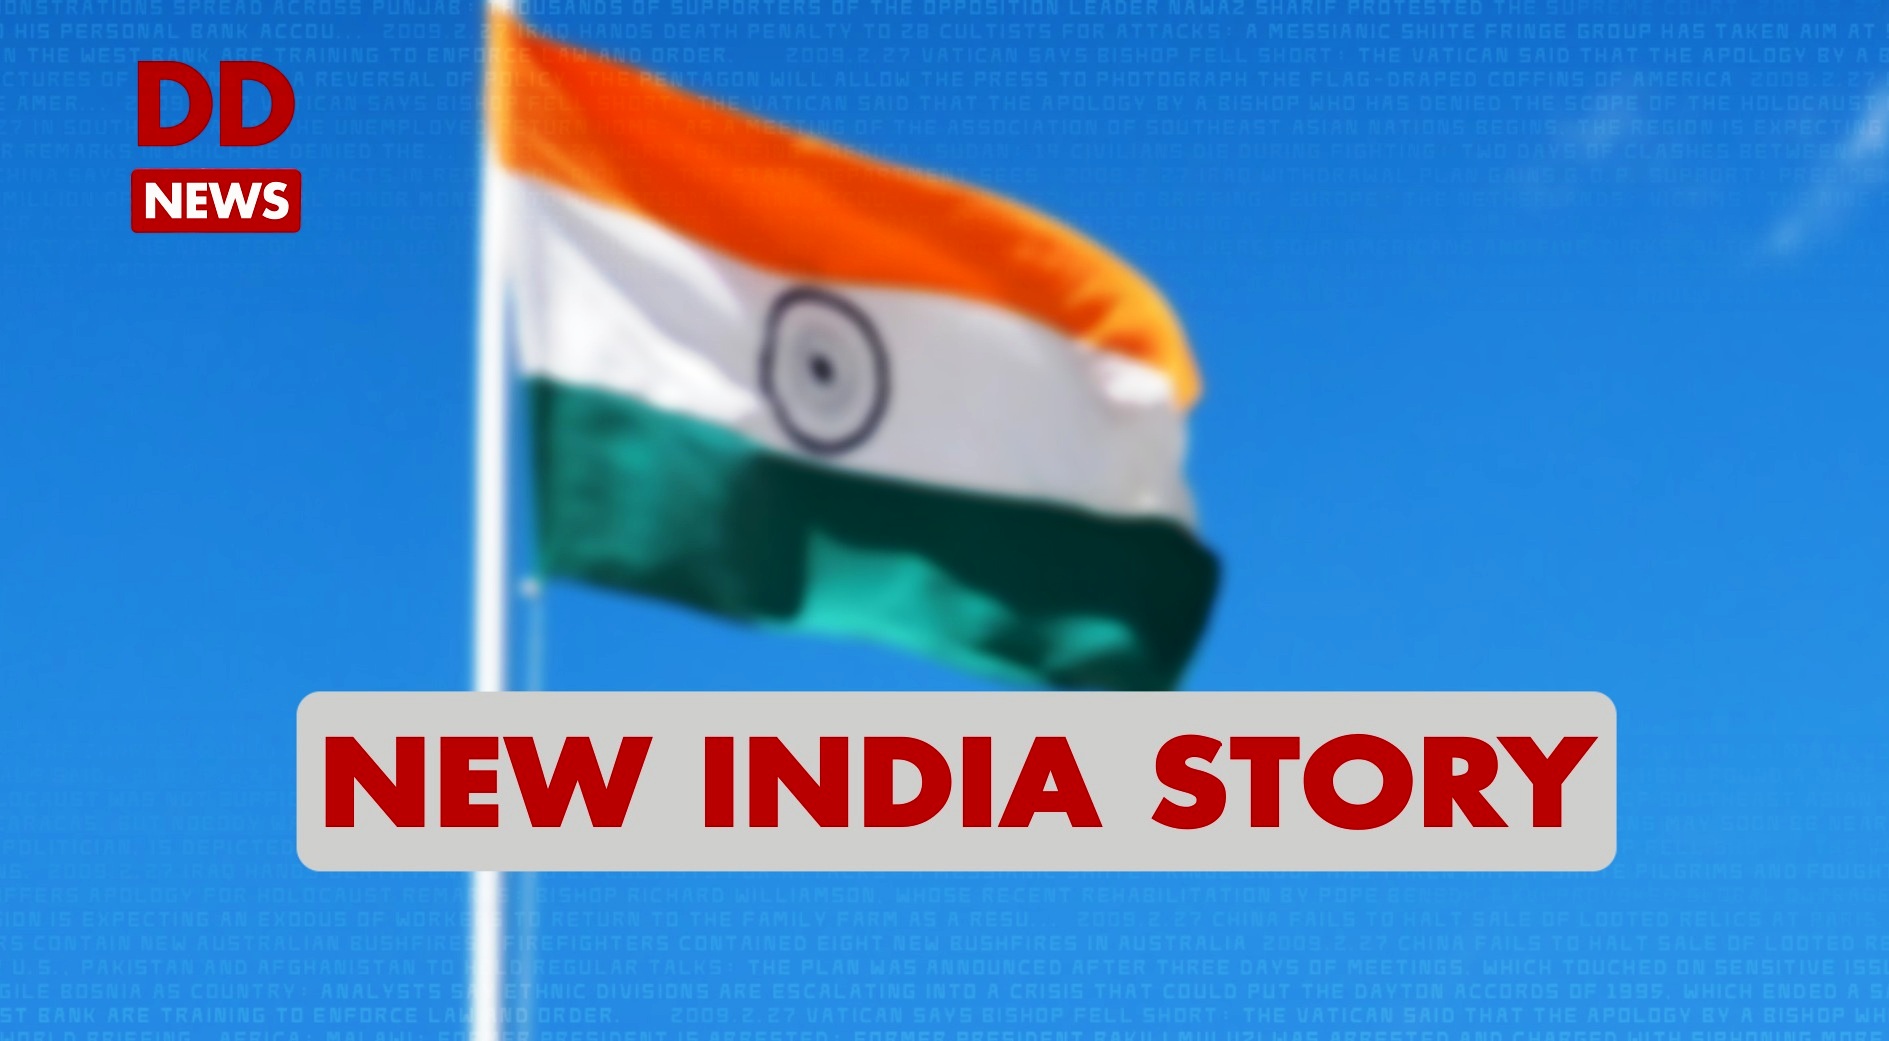 New India Story / Tamil Nadu / Salem / Pradhan Mantri Gram Sadak Yoja